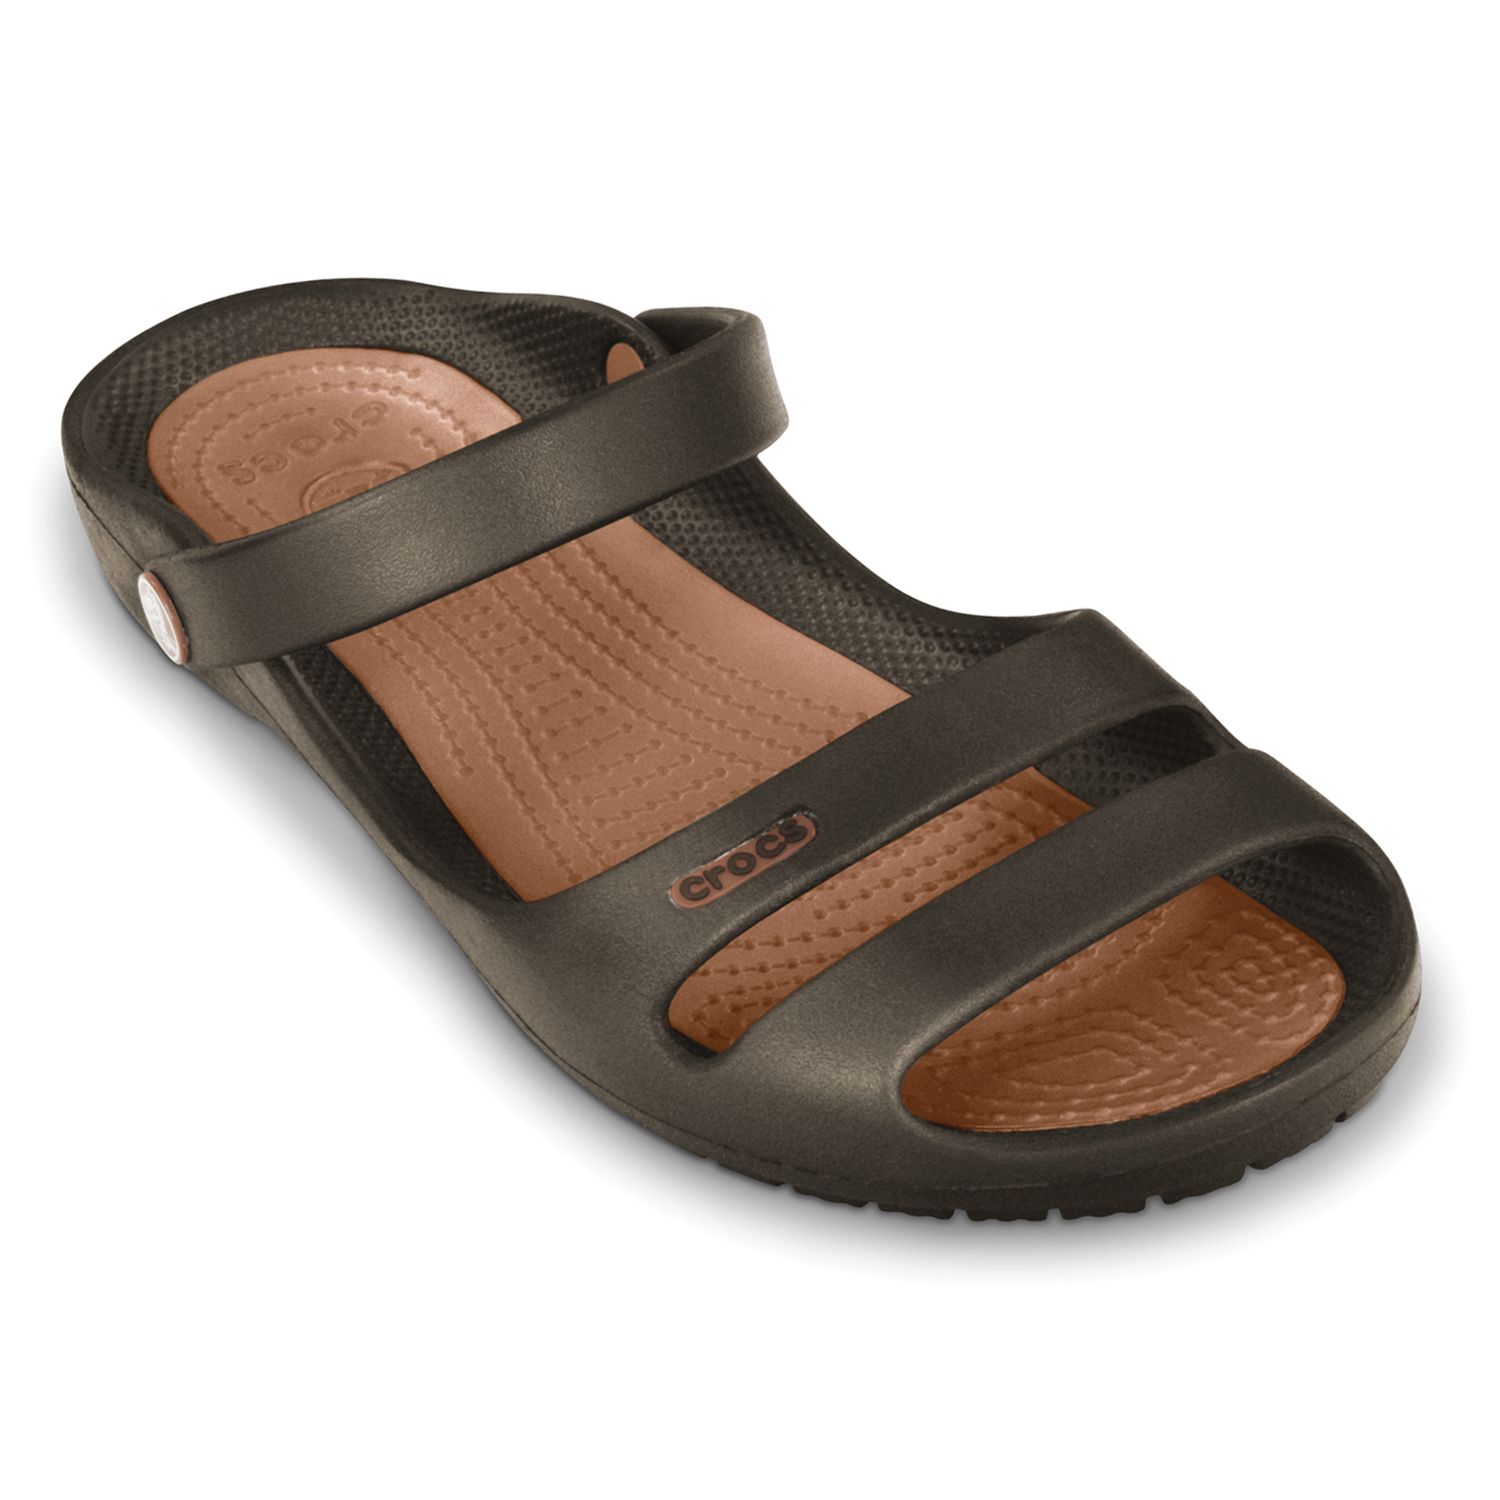 Crocs Cleo II Sandals - Women